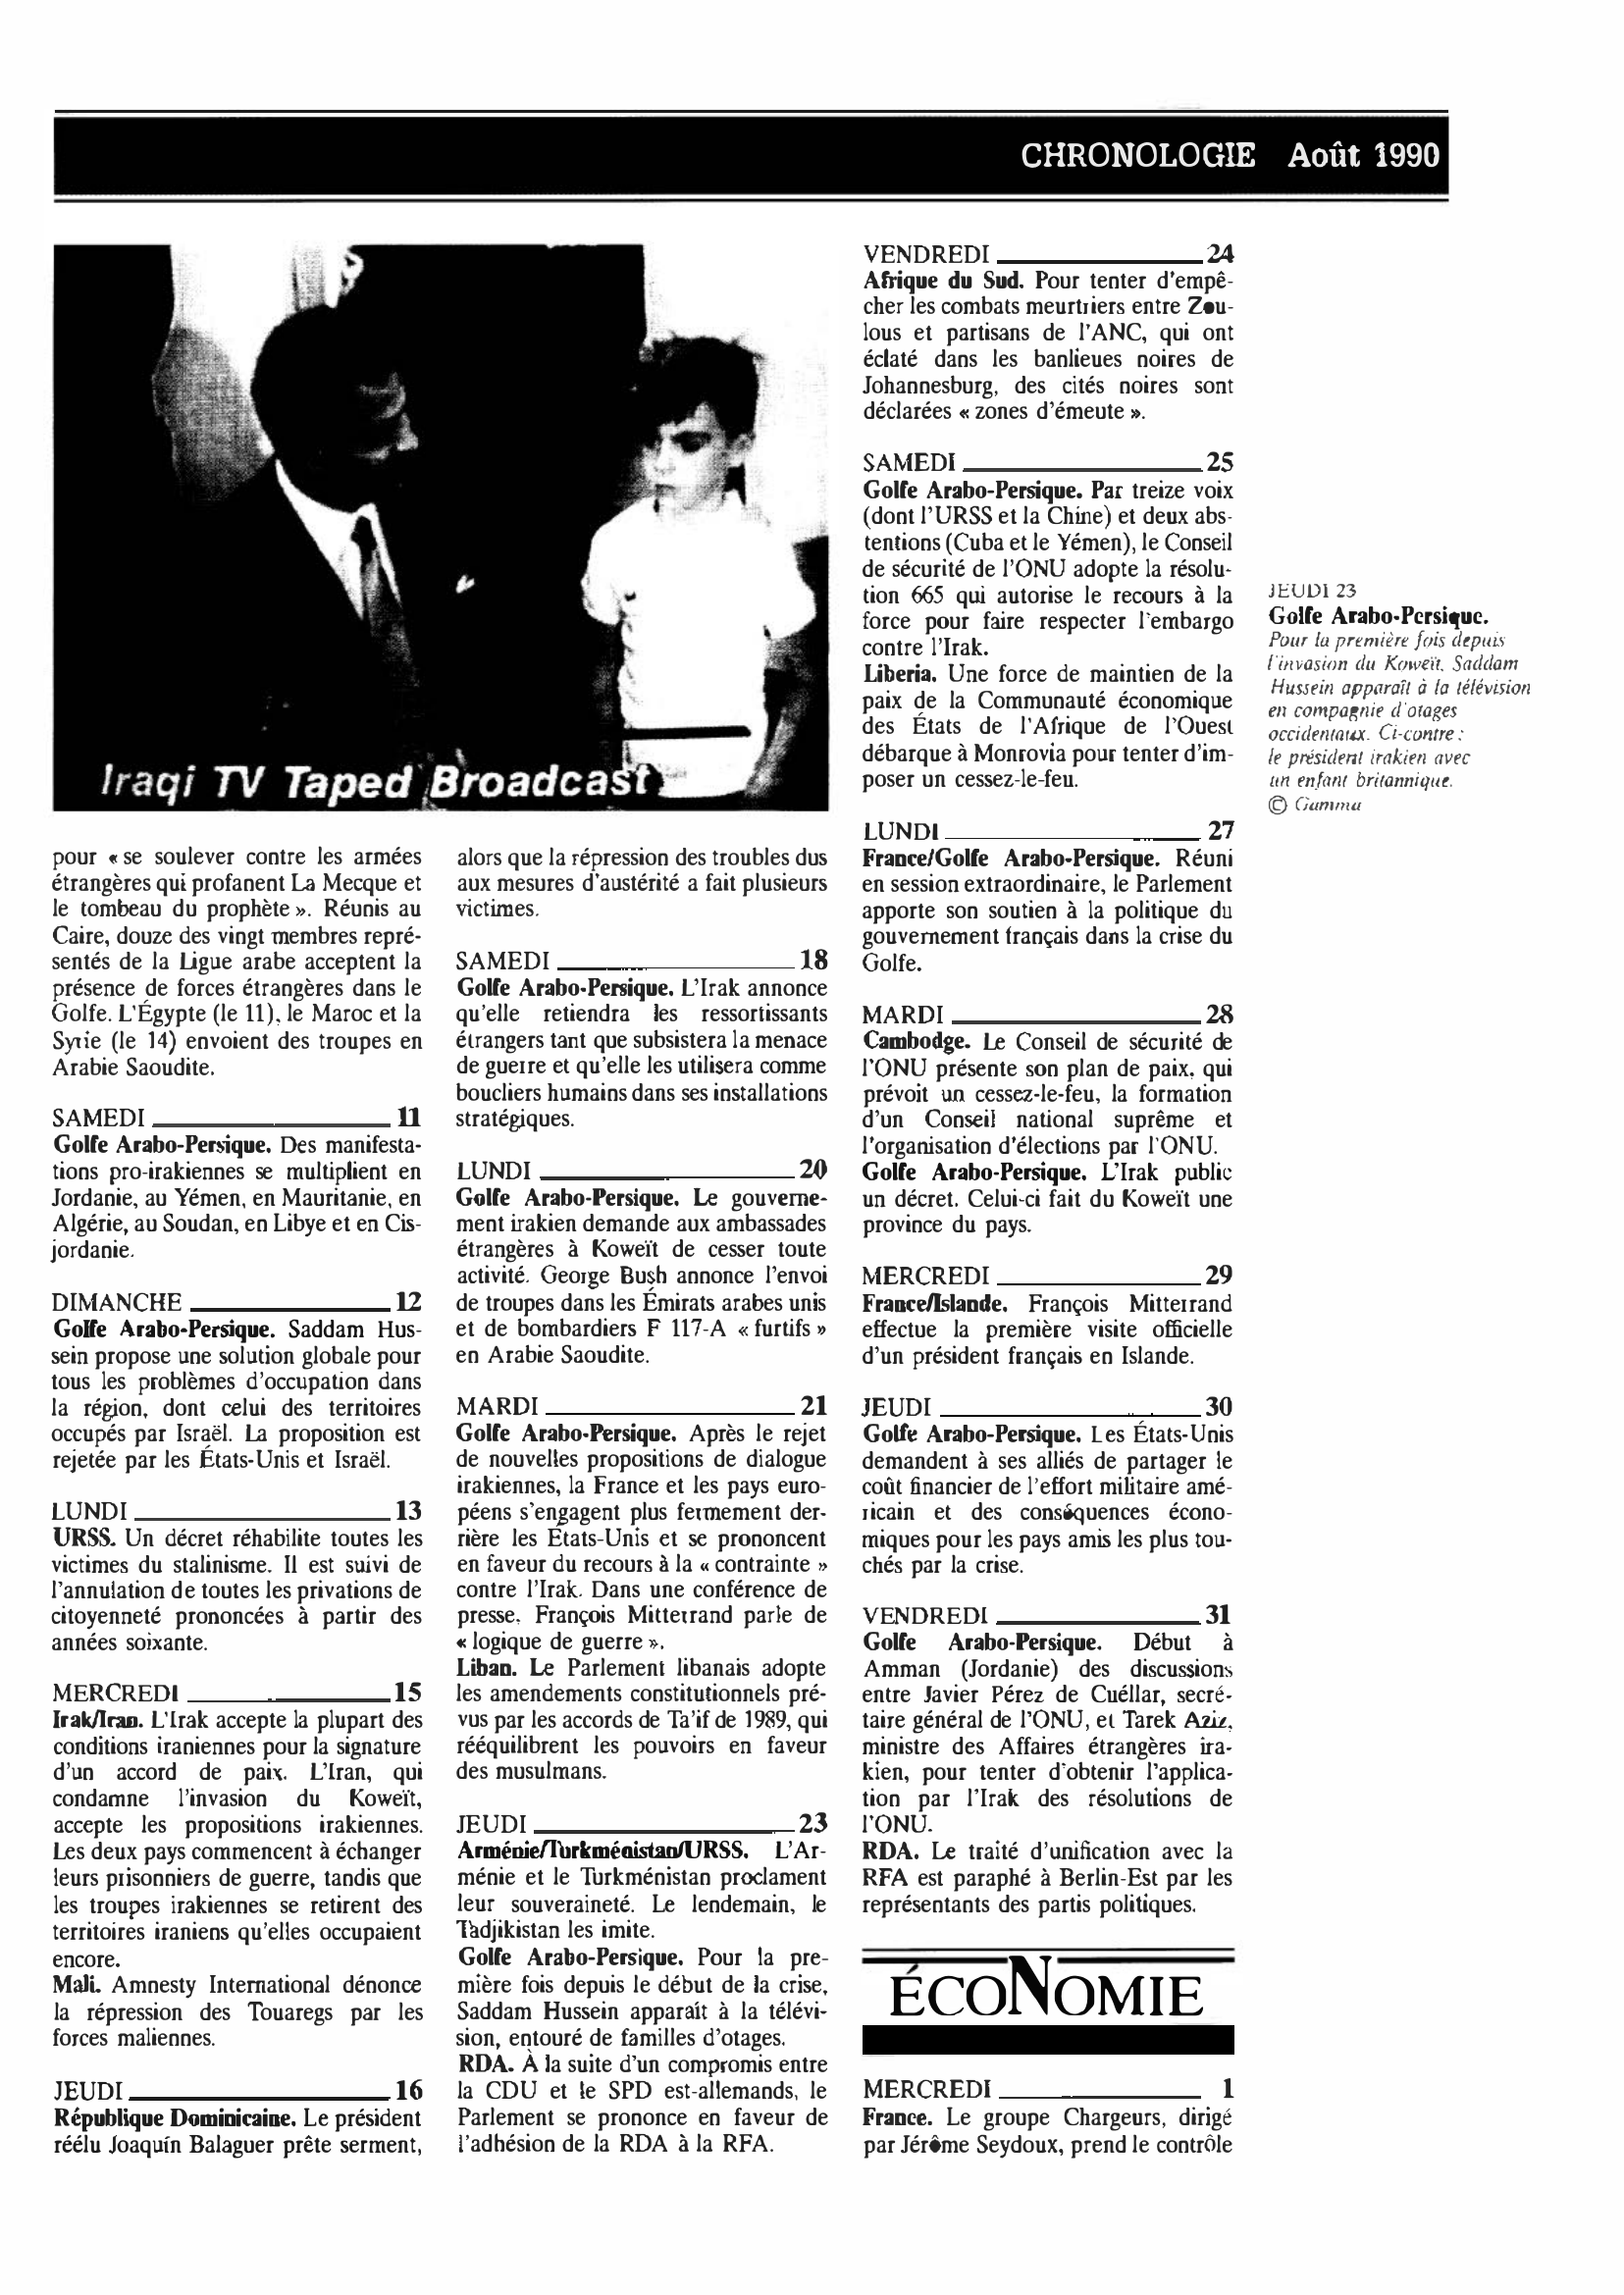 Prévisualisation du document CHRONOLOGIE Août 1990 dans le monde (histoire chronologique)